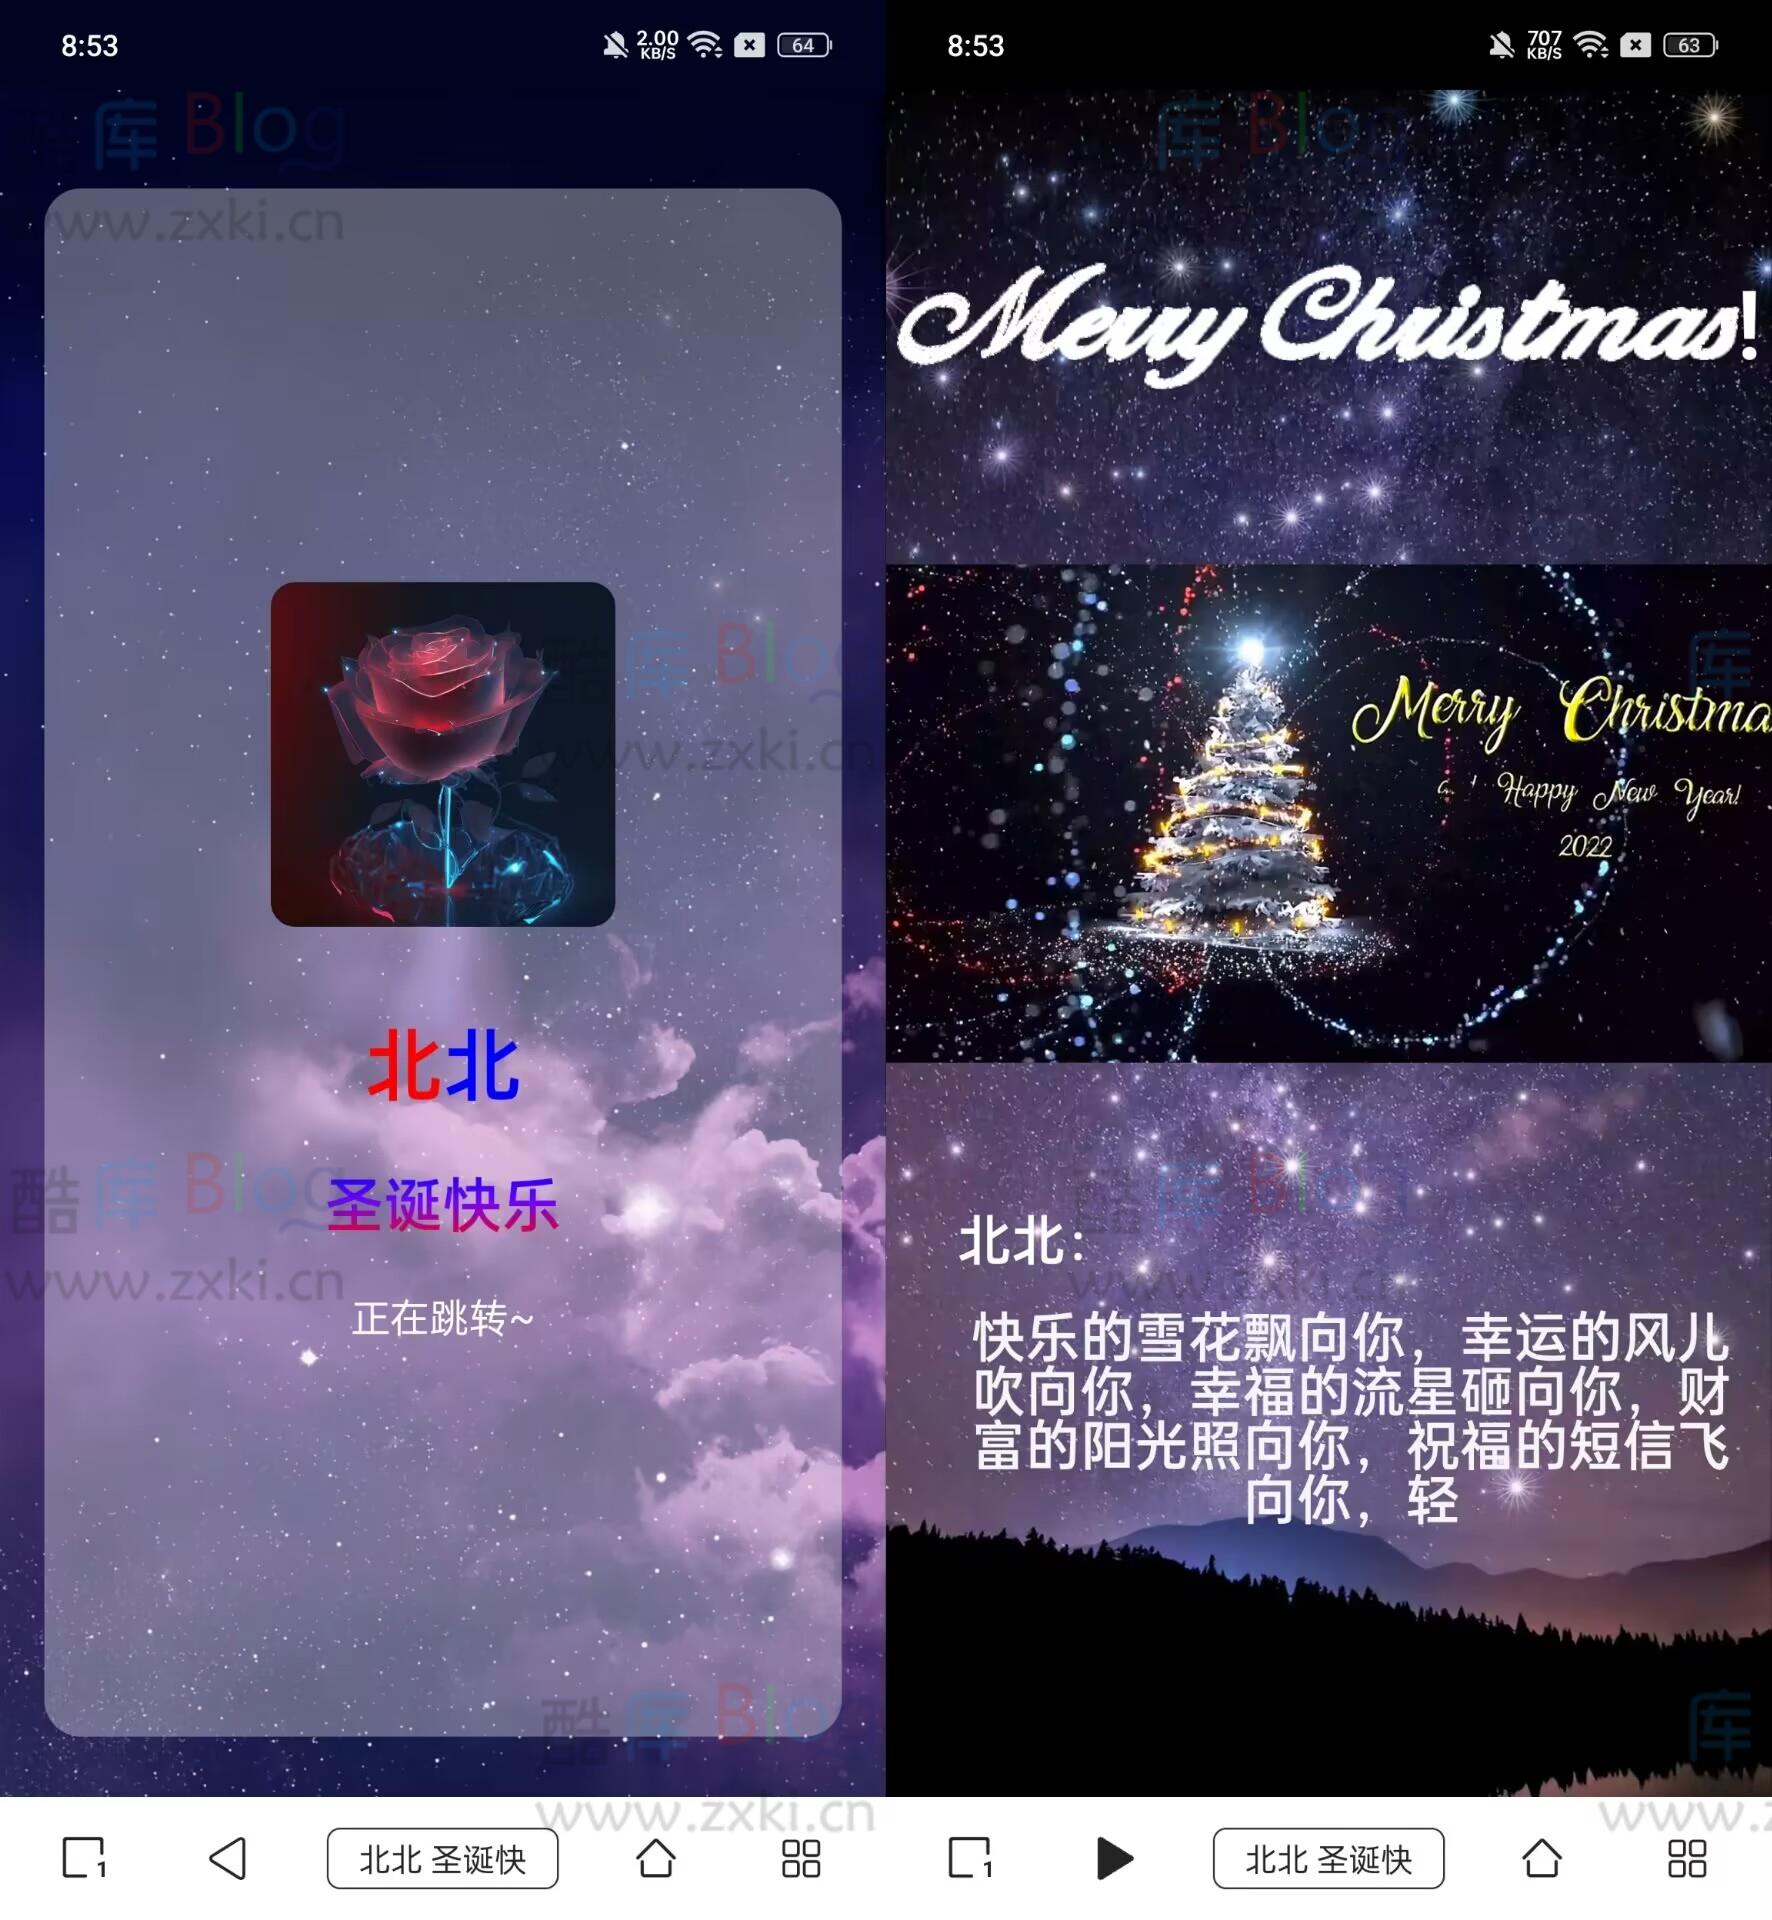 圣诞祝福网站html源码